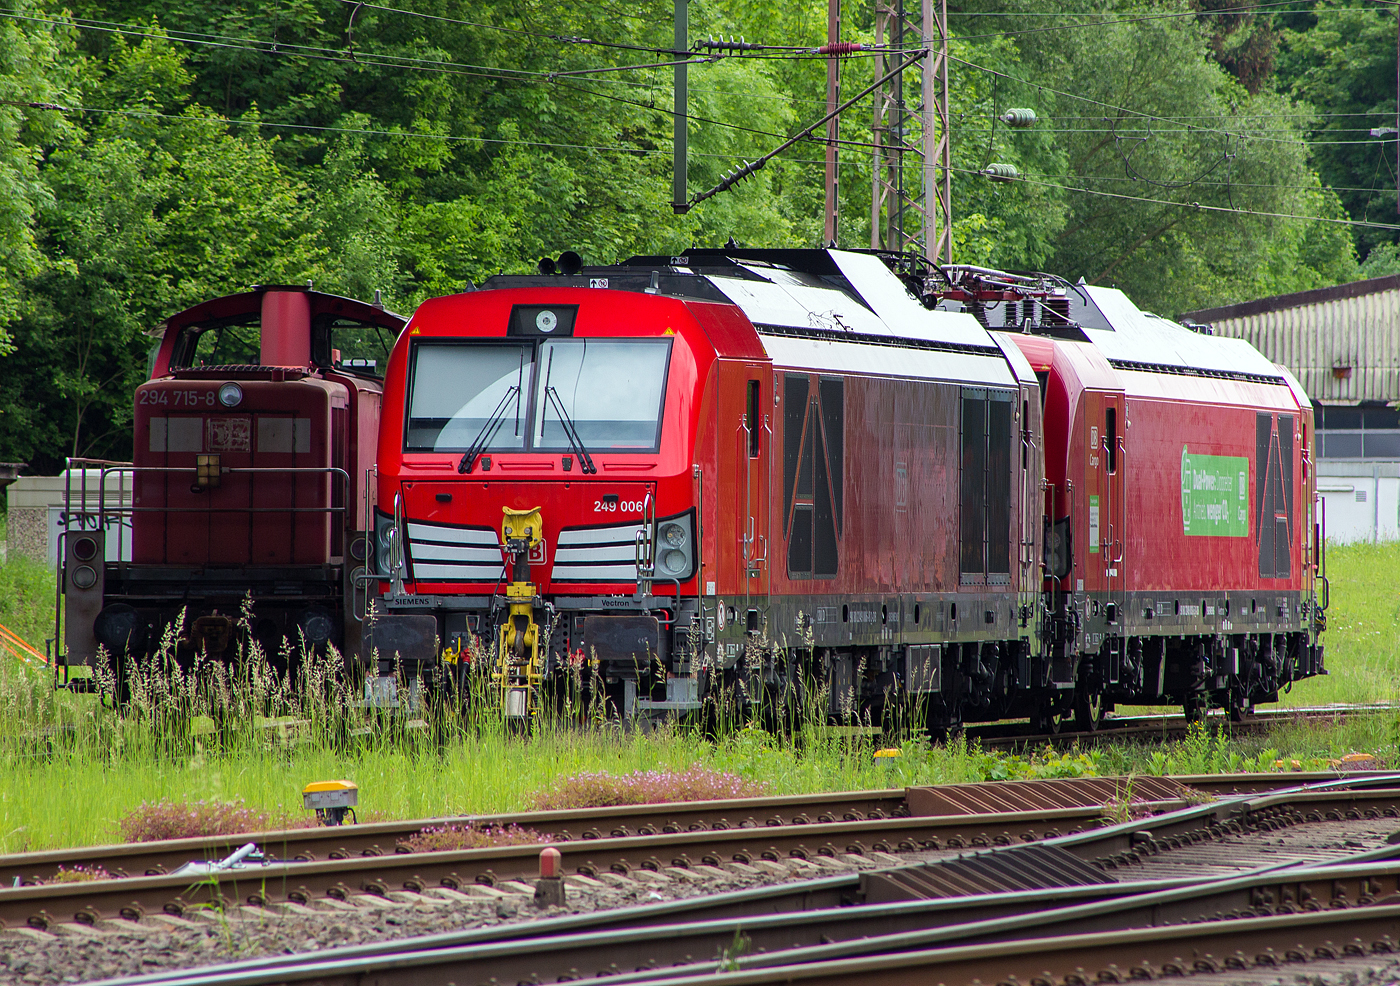 Abgestellt unter der Langenauer Brücke in Kreuztal (nahe dem Rbf) sind am 21 Mai 2024, von links nach rechts die Loks der DB Cargo AG:
Die remotorisierte V90 – 294 715-8, ex 294 215-9, ex 290 215-3. Die V90 wurde 1971 von MaK in Kiel unter der Fabriknummer 1000523 gebaut und als 290 215-3an die DB geliefert. Die Ausrüstung mit Funkfernsteuerung und die Umbezeichnung in DB 294 215-9 erfolgte 1996. Die Remotorisierung mit einem MTU-Motor 8V 4000 R41, Einbau einer neuen Lüfteranlage, einem neuem Luftpresser und Ausrüstung mit dem Umlaufgeländer erfolgten 2003 bei der DB Fahrzeuginstandhaltung GmbH im Werk Cottbus. Daraufhin erfolgte die Umzeichnung in die heutige 294 715-8.

Daneben die beiden neuen Zweikraftlokomotiven „Siemens Vectron Dual Mode light“ (BR 249), vorne die 249 006-8 (90 80 2249 006-8 D-DB) und dahinter die 249 003-5 (90 80 2249 003-5 D-DB). Beide Vectron DM light wurden 2022 von Siemens Mobility GmbH in München-Allach unter den Fabriknummern 23061 bzw. 23064 gebaut und waren erst durch Siemens Mobility GmbH als 90 80 2249 003-5 D-SDEHC bzw. 90 80 2249 006-8  D-SDEHC registriert/eingestellt. Erst nach der Abnahme durch die DB Cargo und den Verkauf an diese im März 2024 wurde sie durch die DB Cargo eingestellt. Die Loks der Baureihe 249 haben die Zulassung für Deutschland und eine Höchstgeschwindigkeit von 120 km/h.